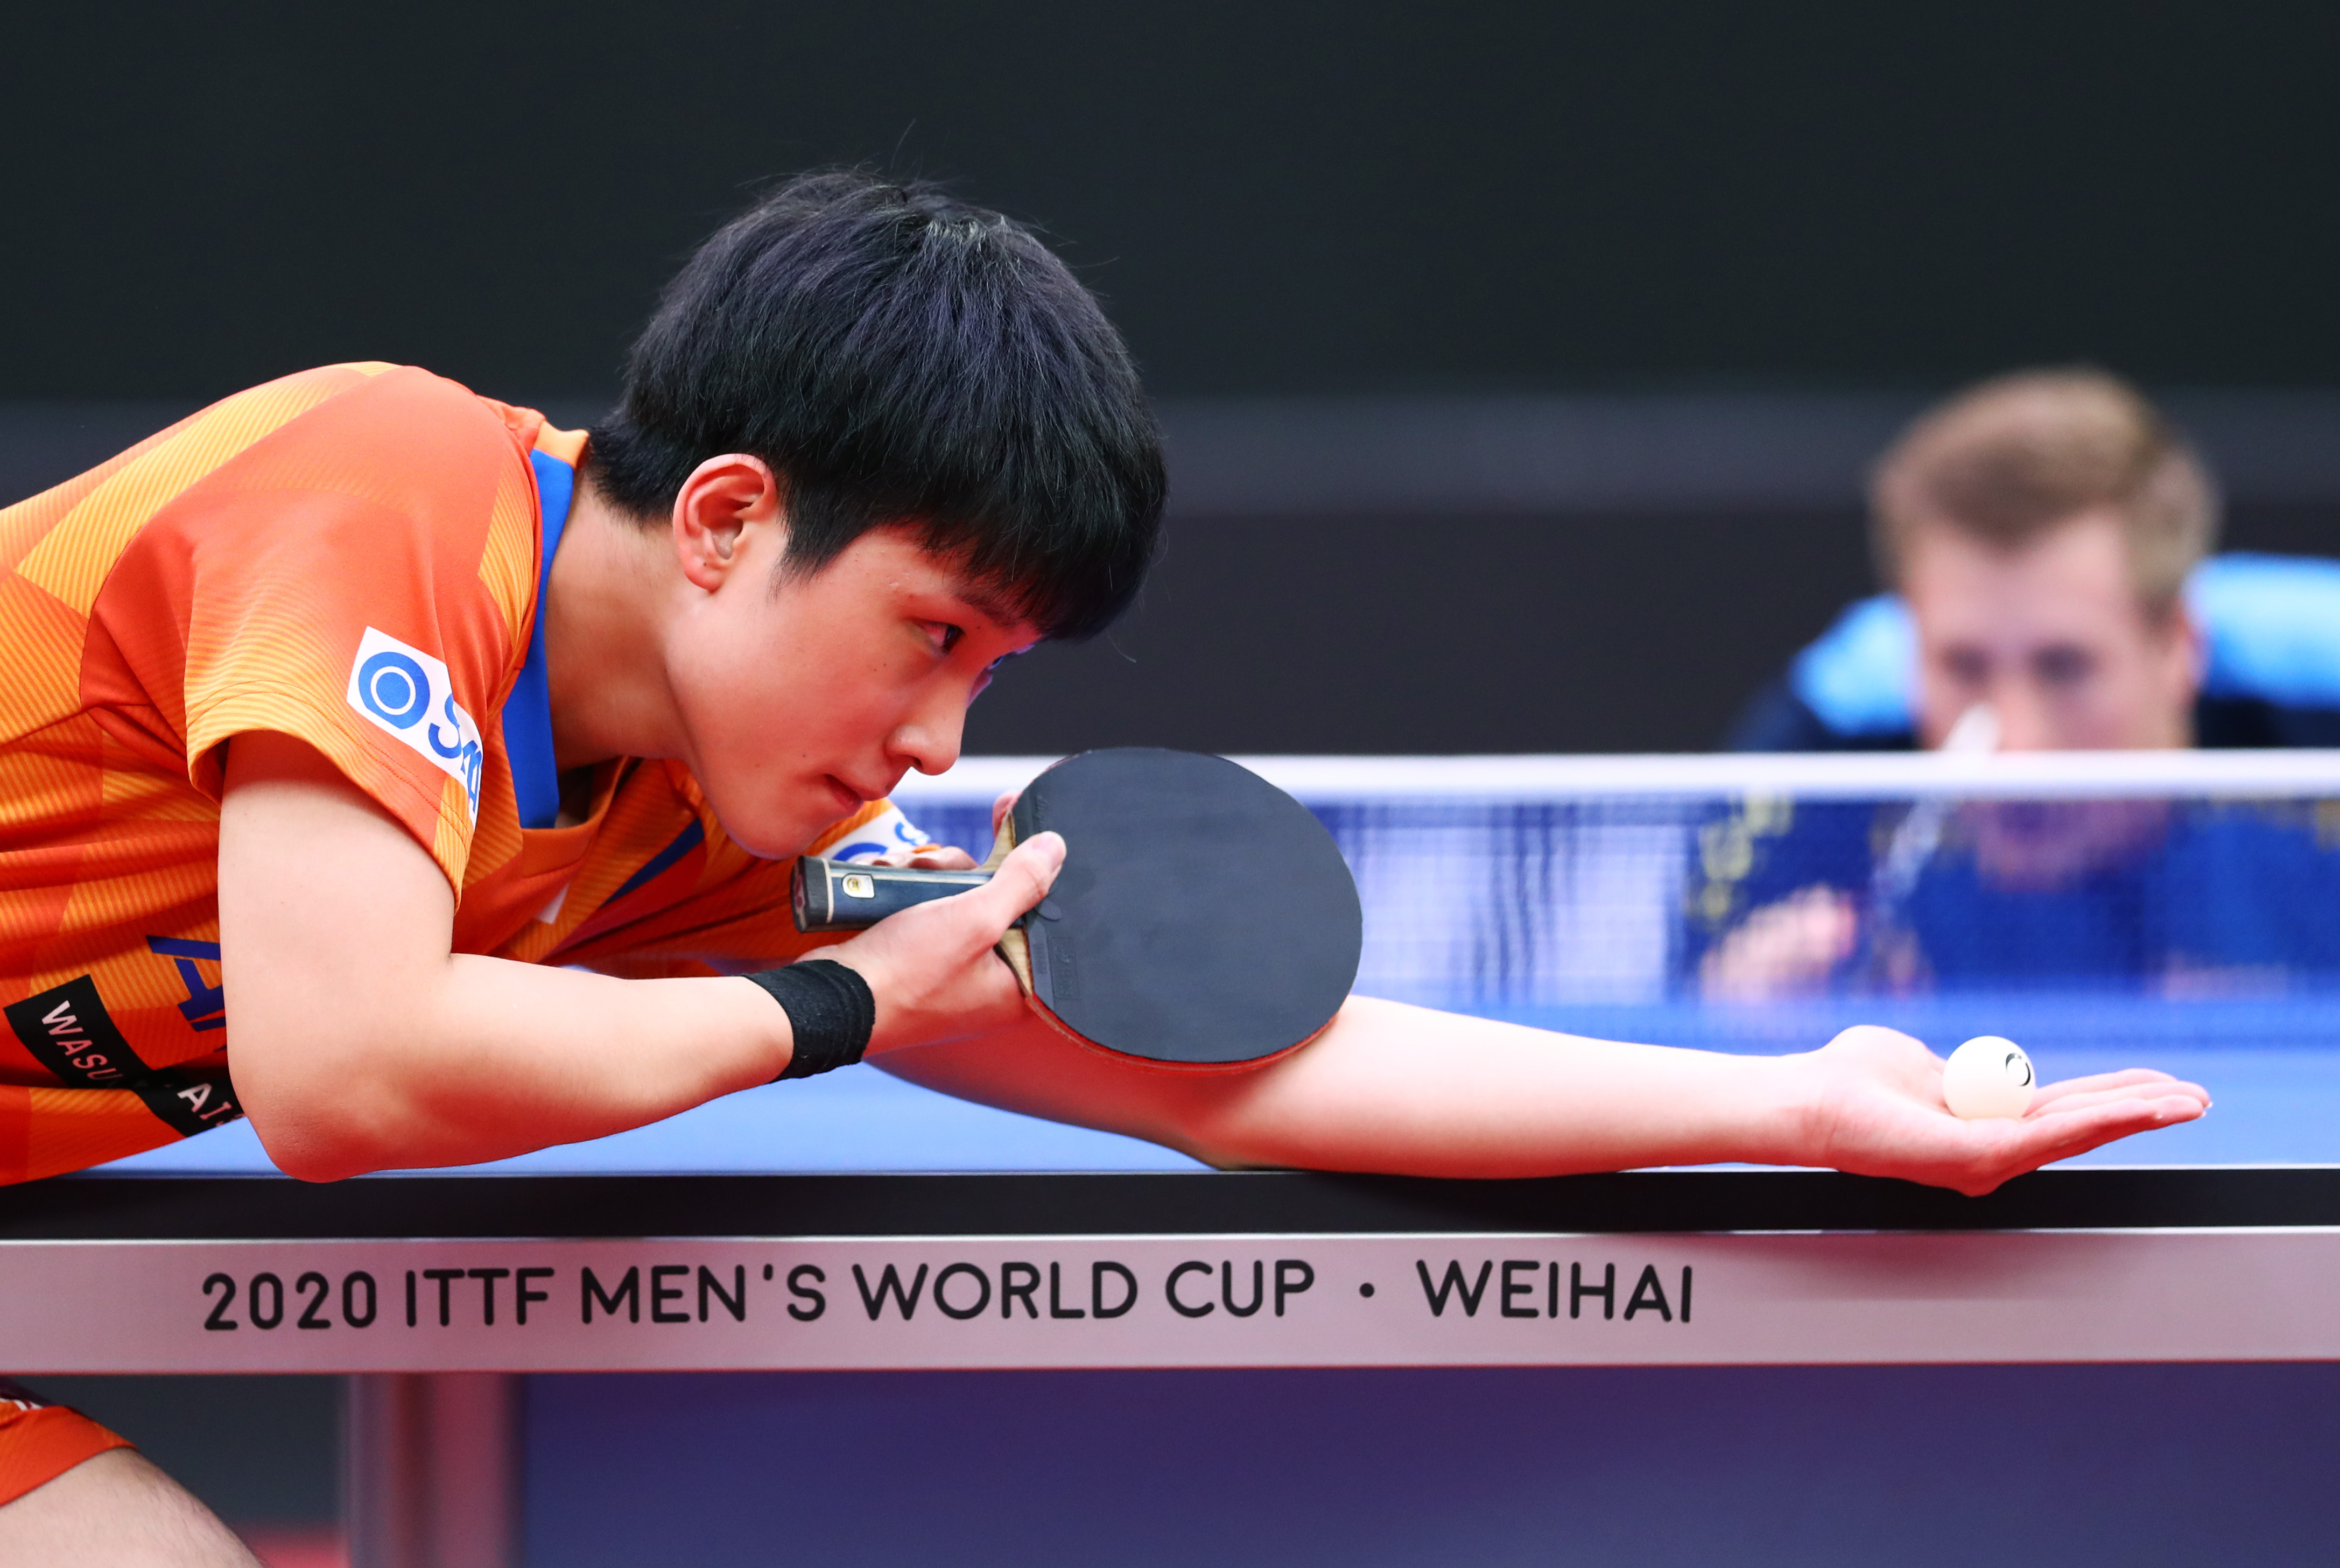 乒乓球——男子世界杯:日本选手张本智和晋级四强